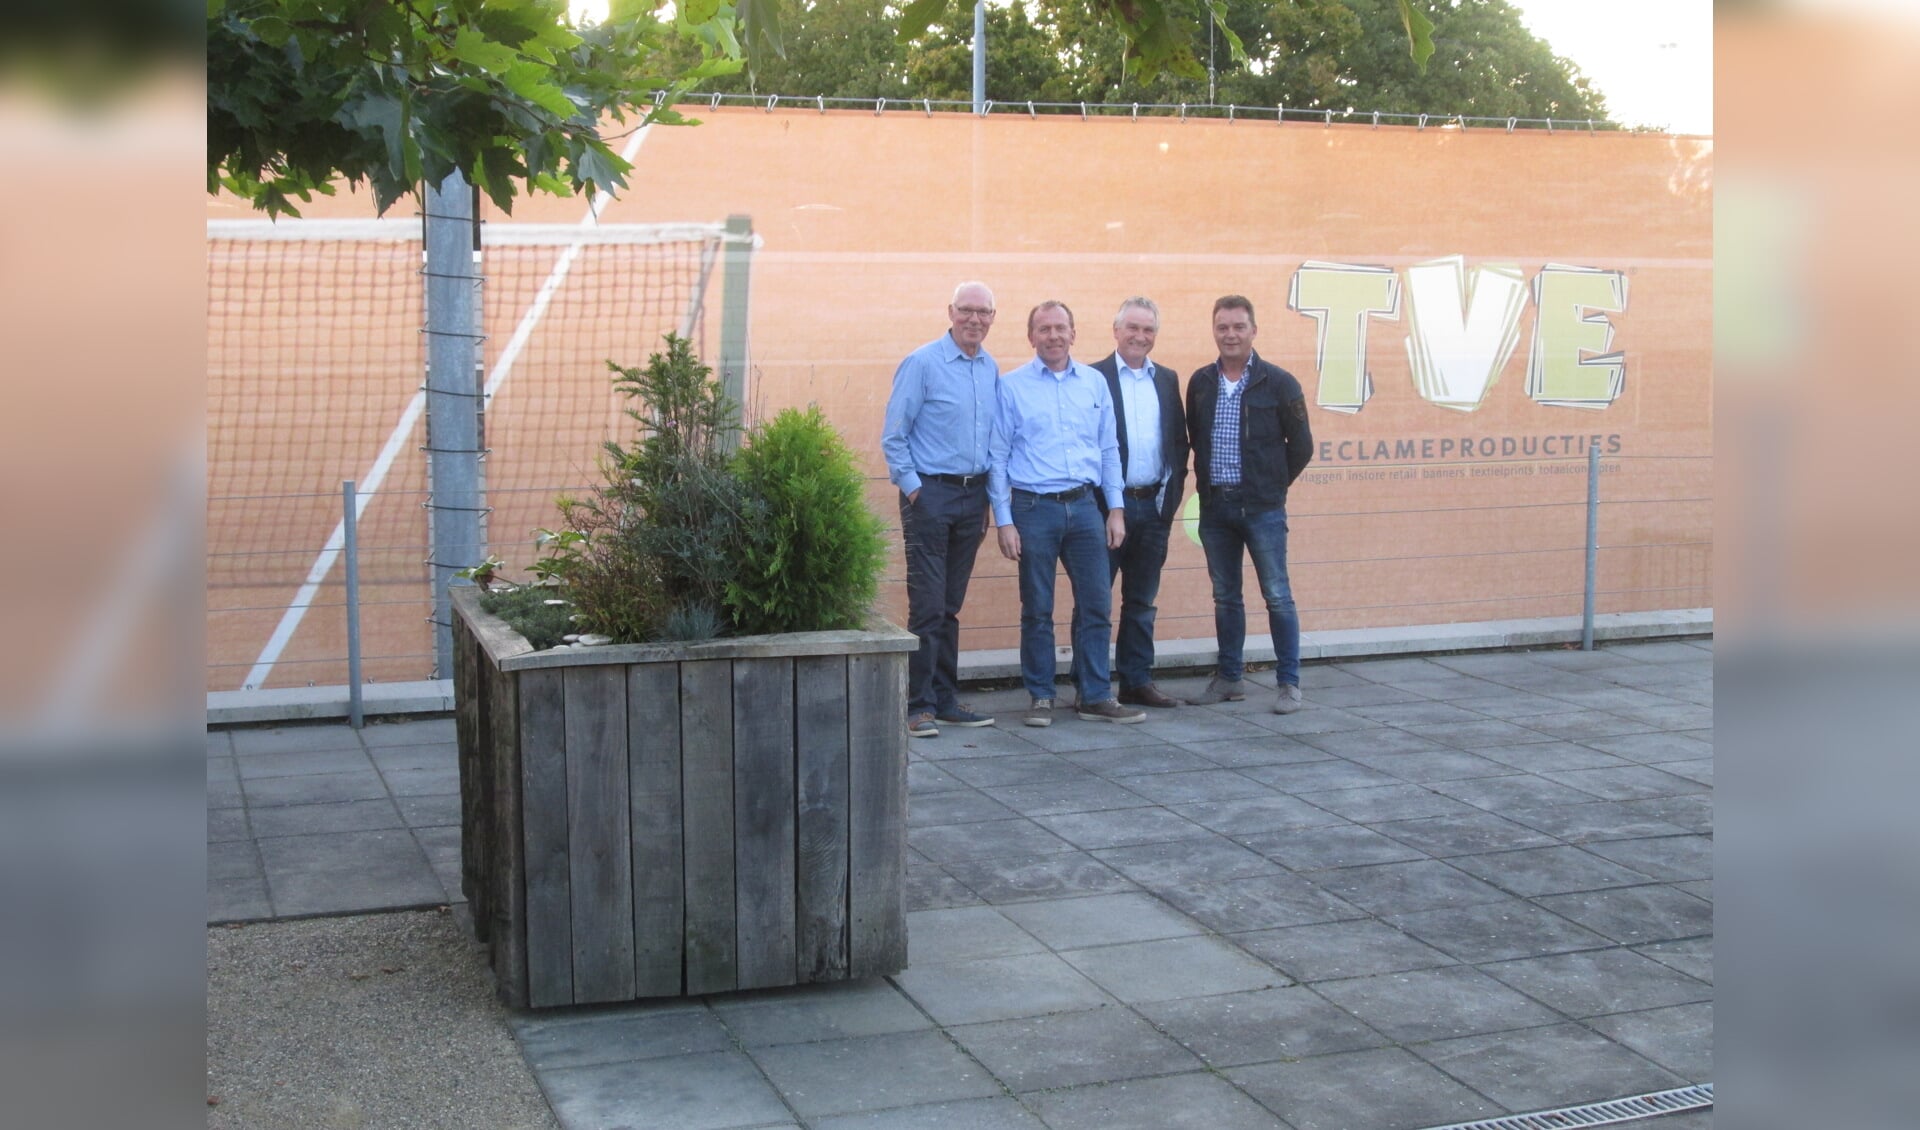 Jan de Boer (TV de Kienehoef), Mari Versantvoort (Rosval), Hans v/d Heijden (TV de Kienehoef)en Hennie van Osch (TVE)